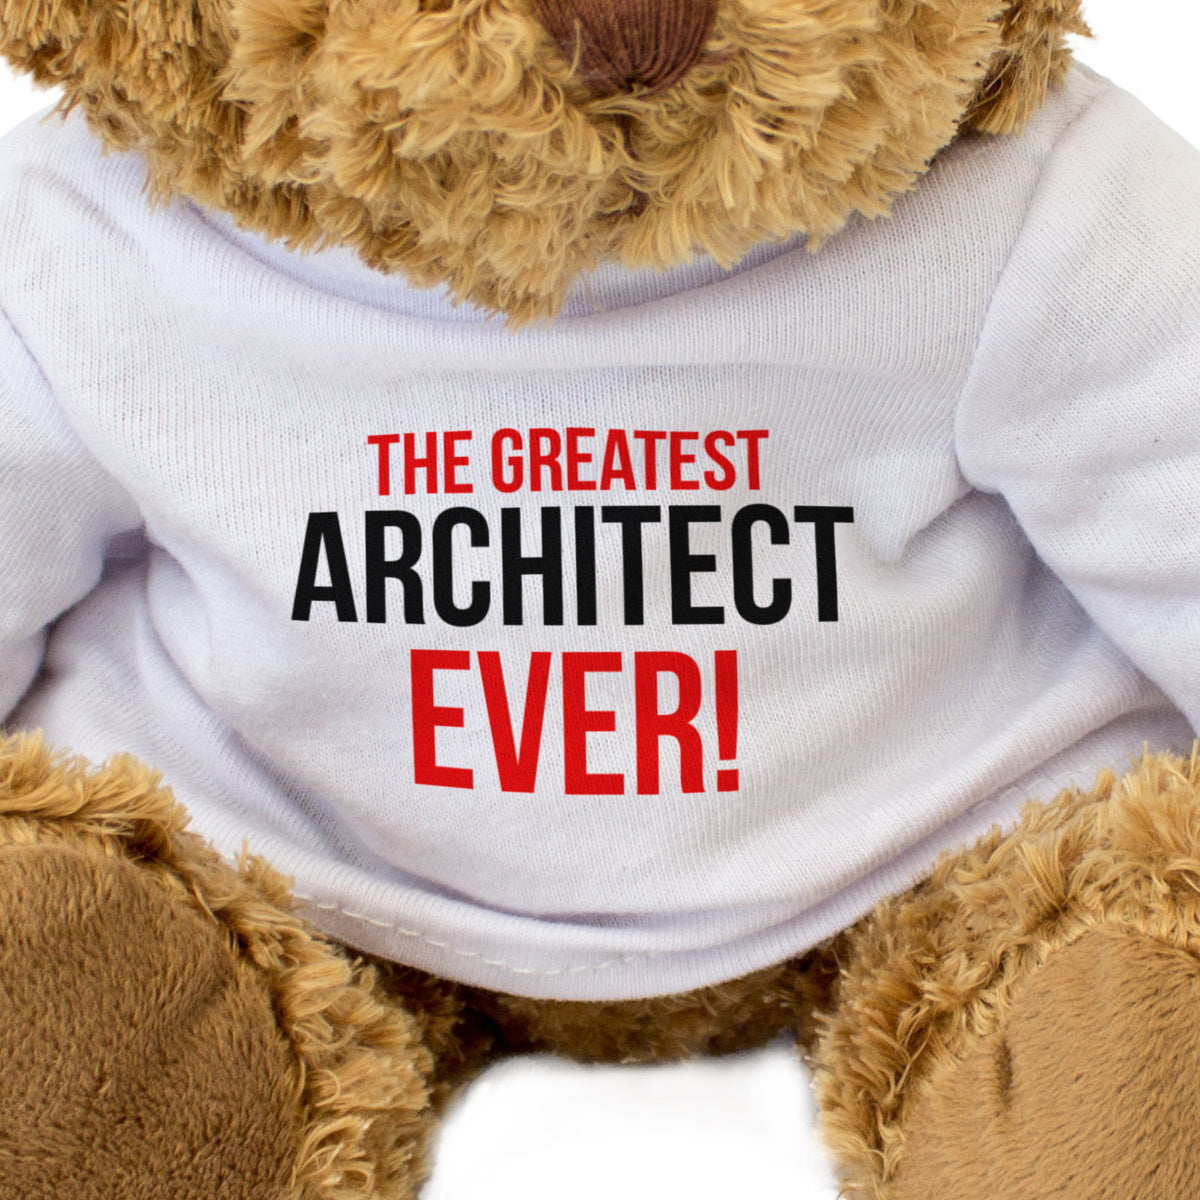 The Greatest Architect Ever - Teddy Bear